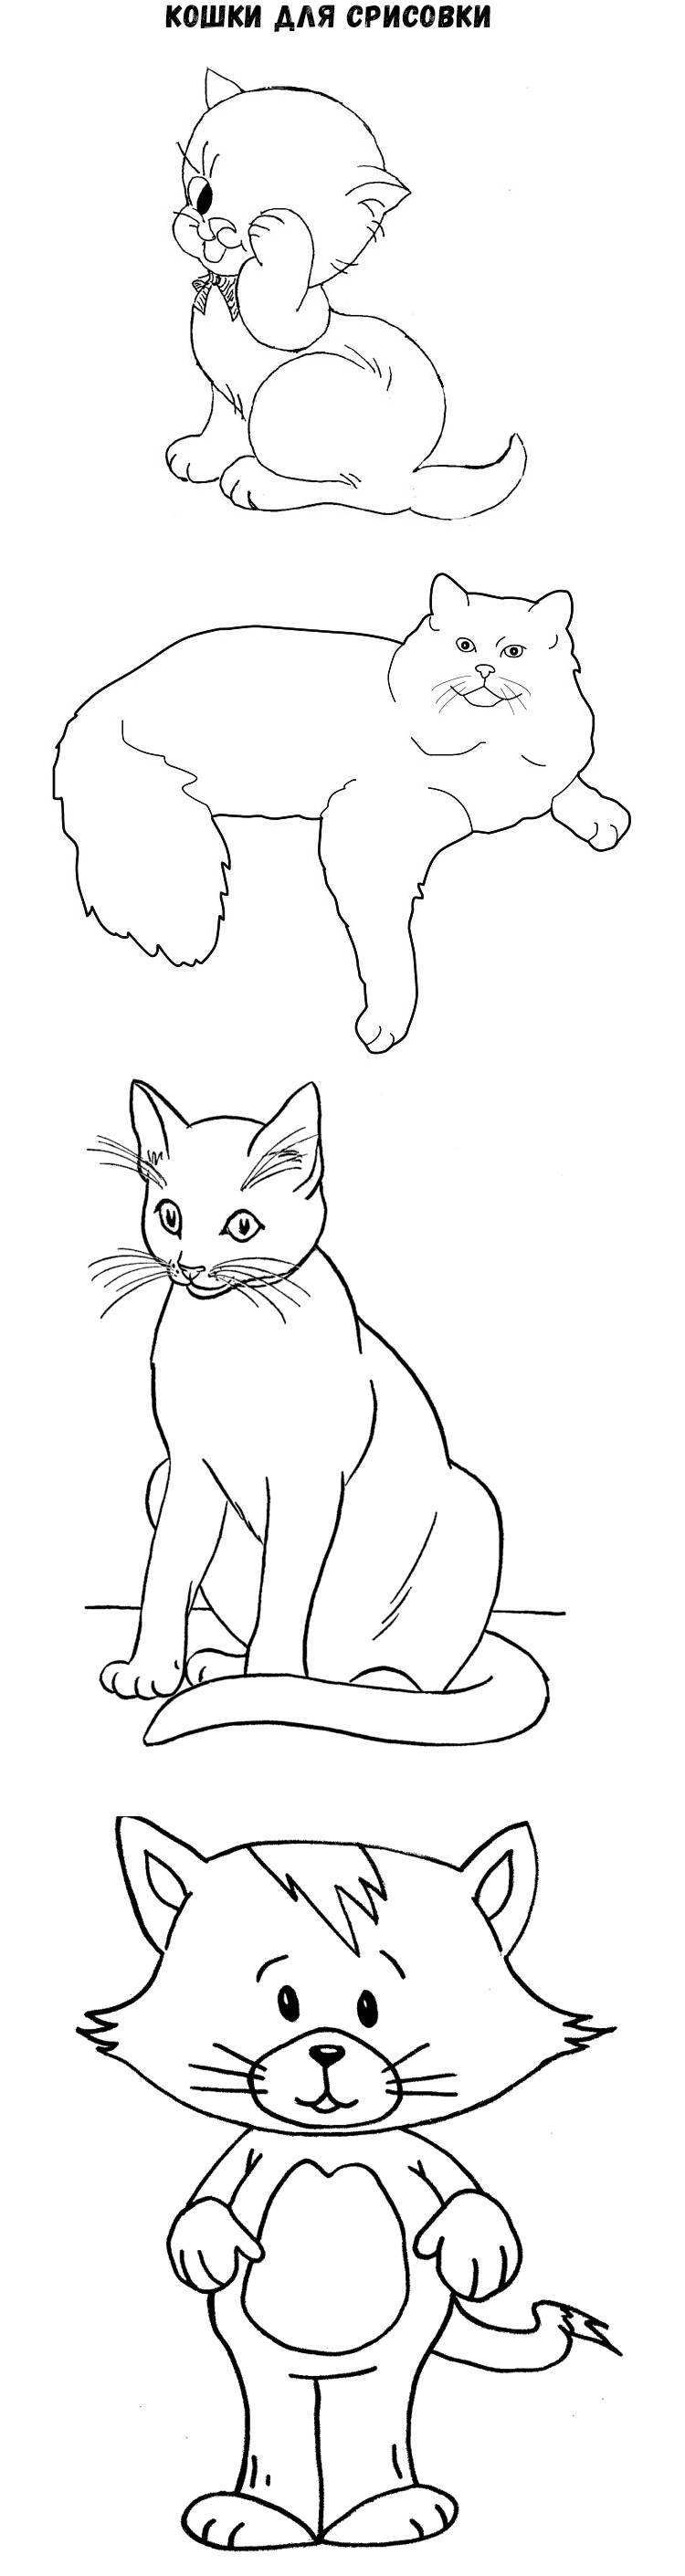 Рисунок котенка для срисовки легко. Рисунок кошки для срисовки легкие. Кошки рисунки для срисовки для детей. Картинки кошечек для срисовки. Рисунки котят для срисовки.